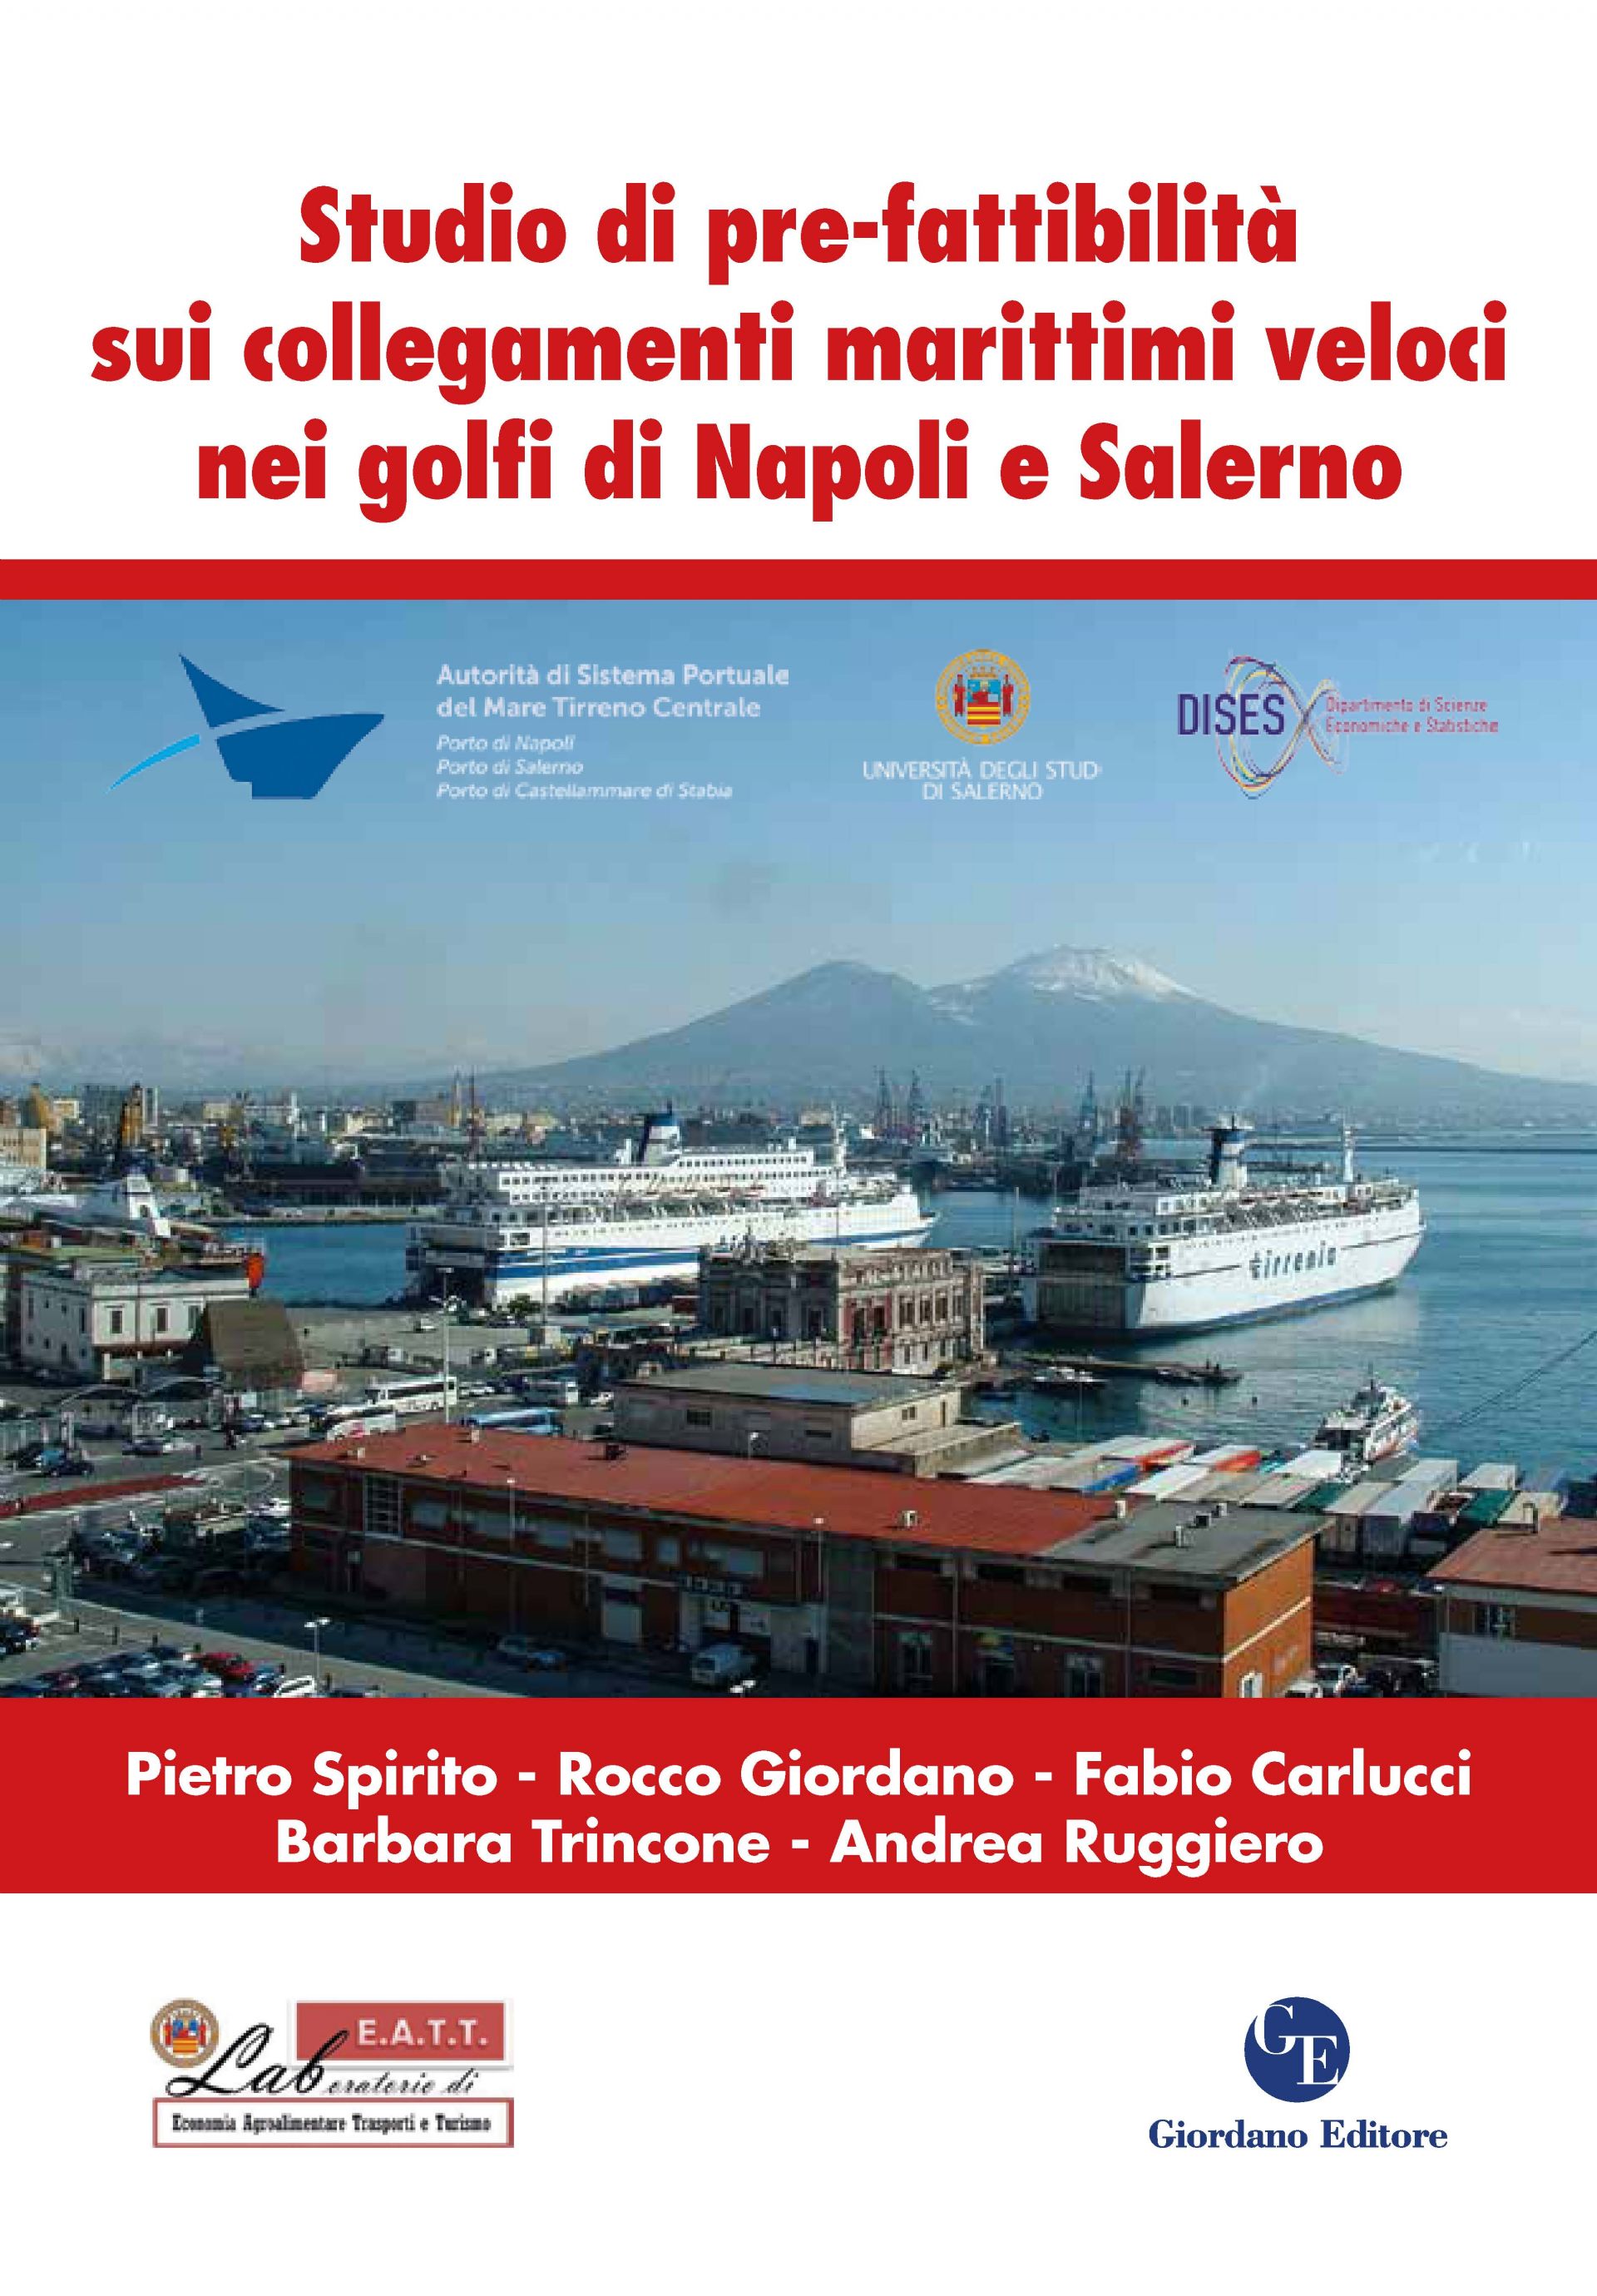 Studio di pre-fattibilità sui collegamenti marittimi veloci nei golfi di Napoli e Salerno